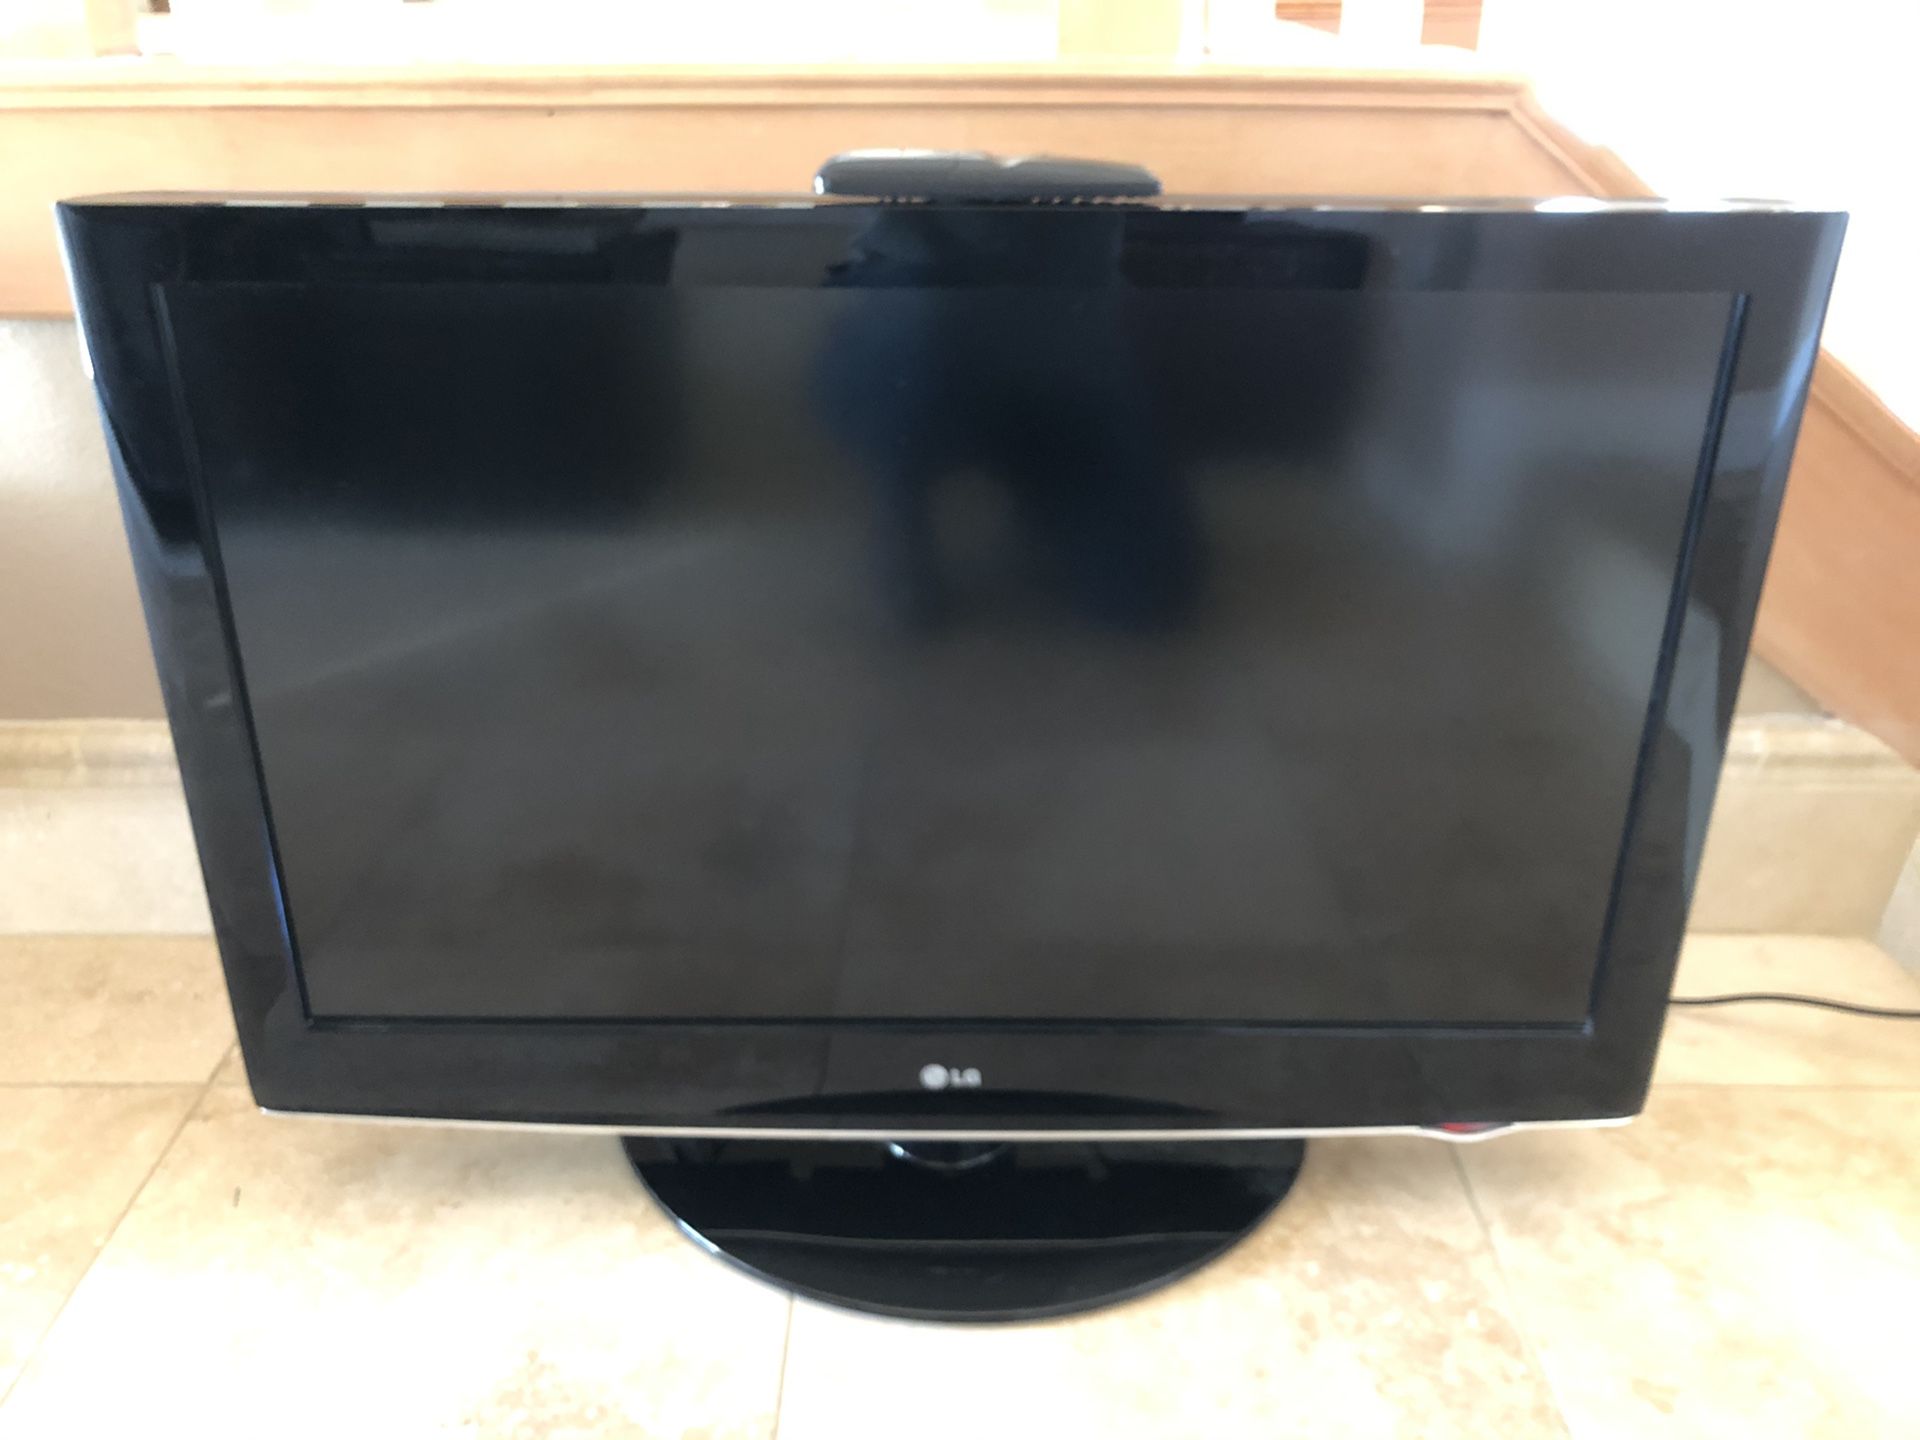 LG 37 inch LCD TV